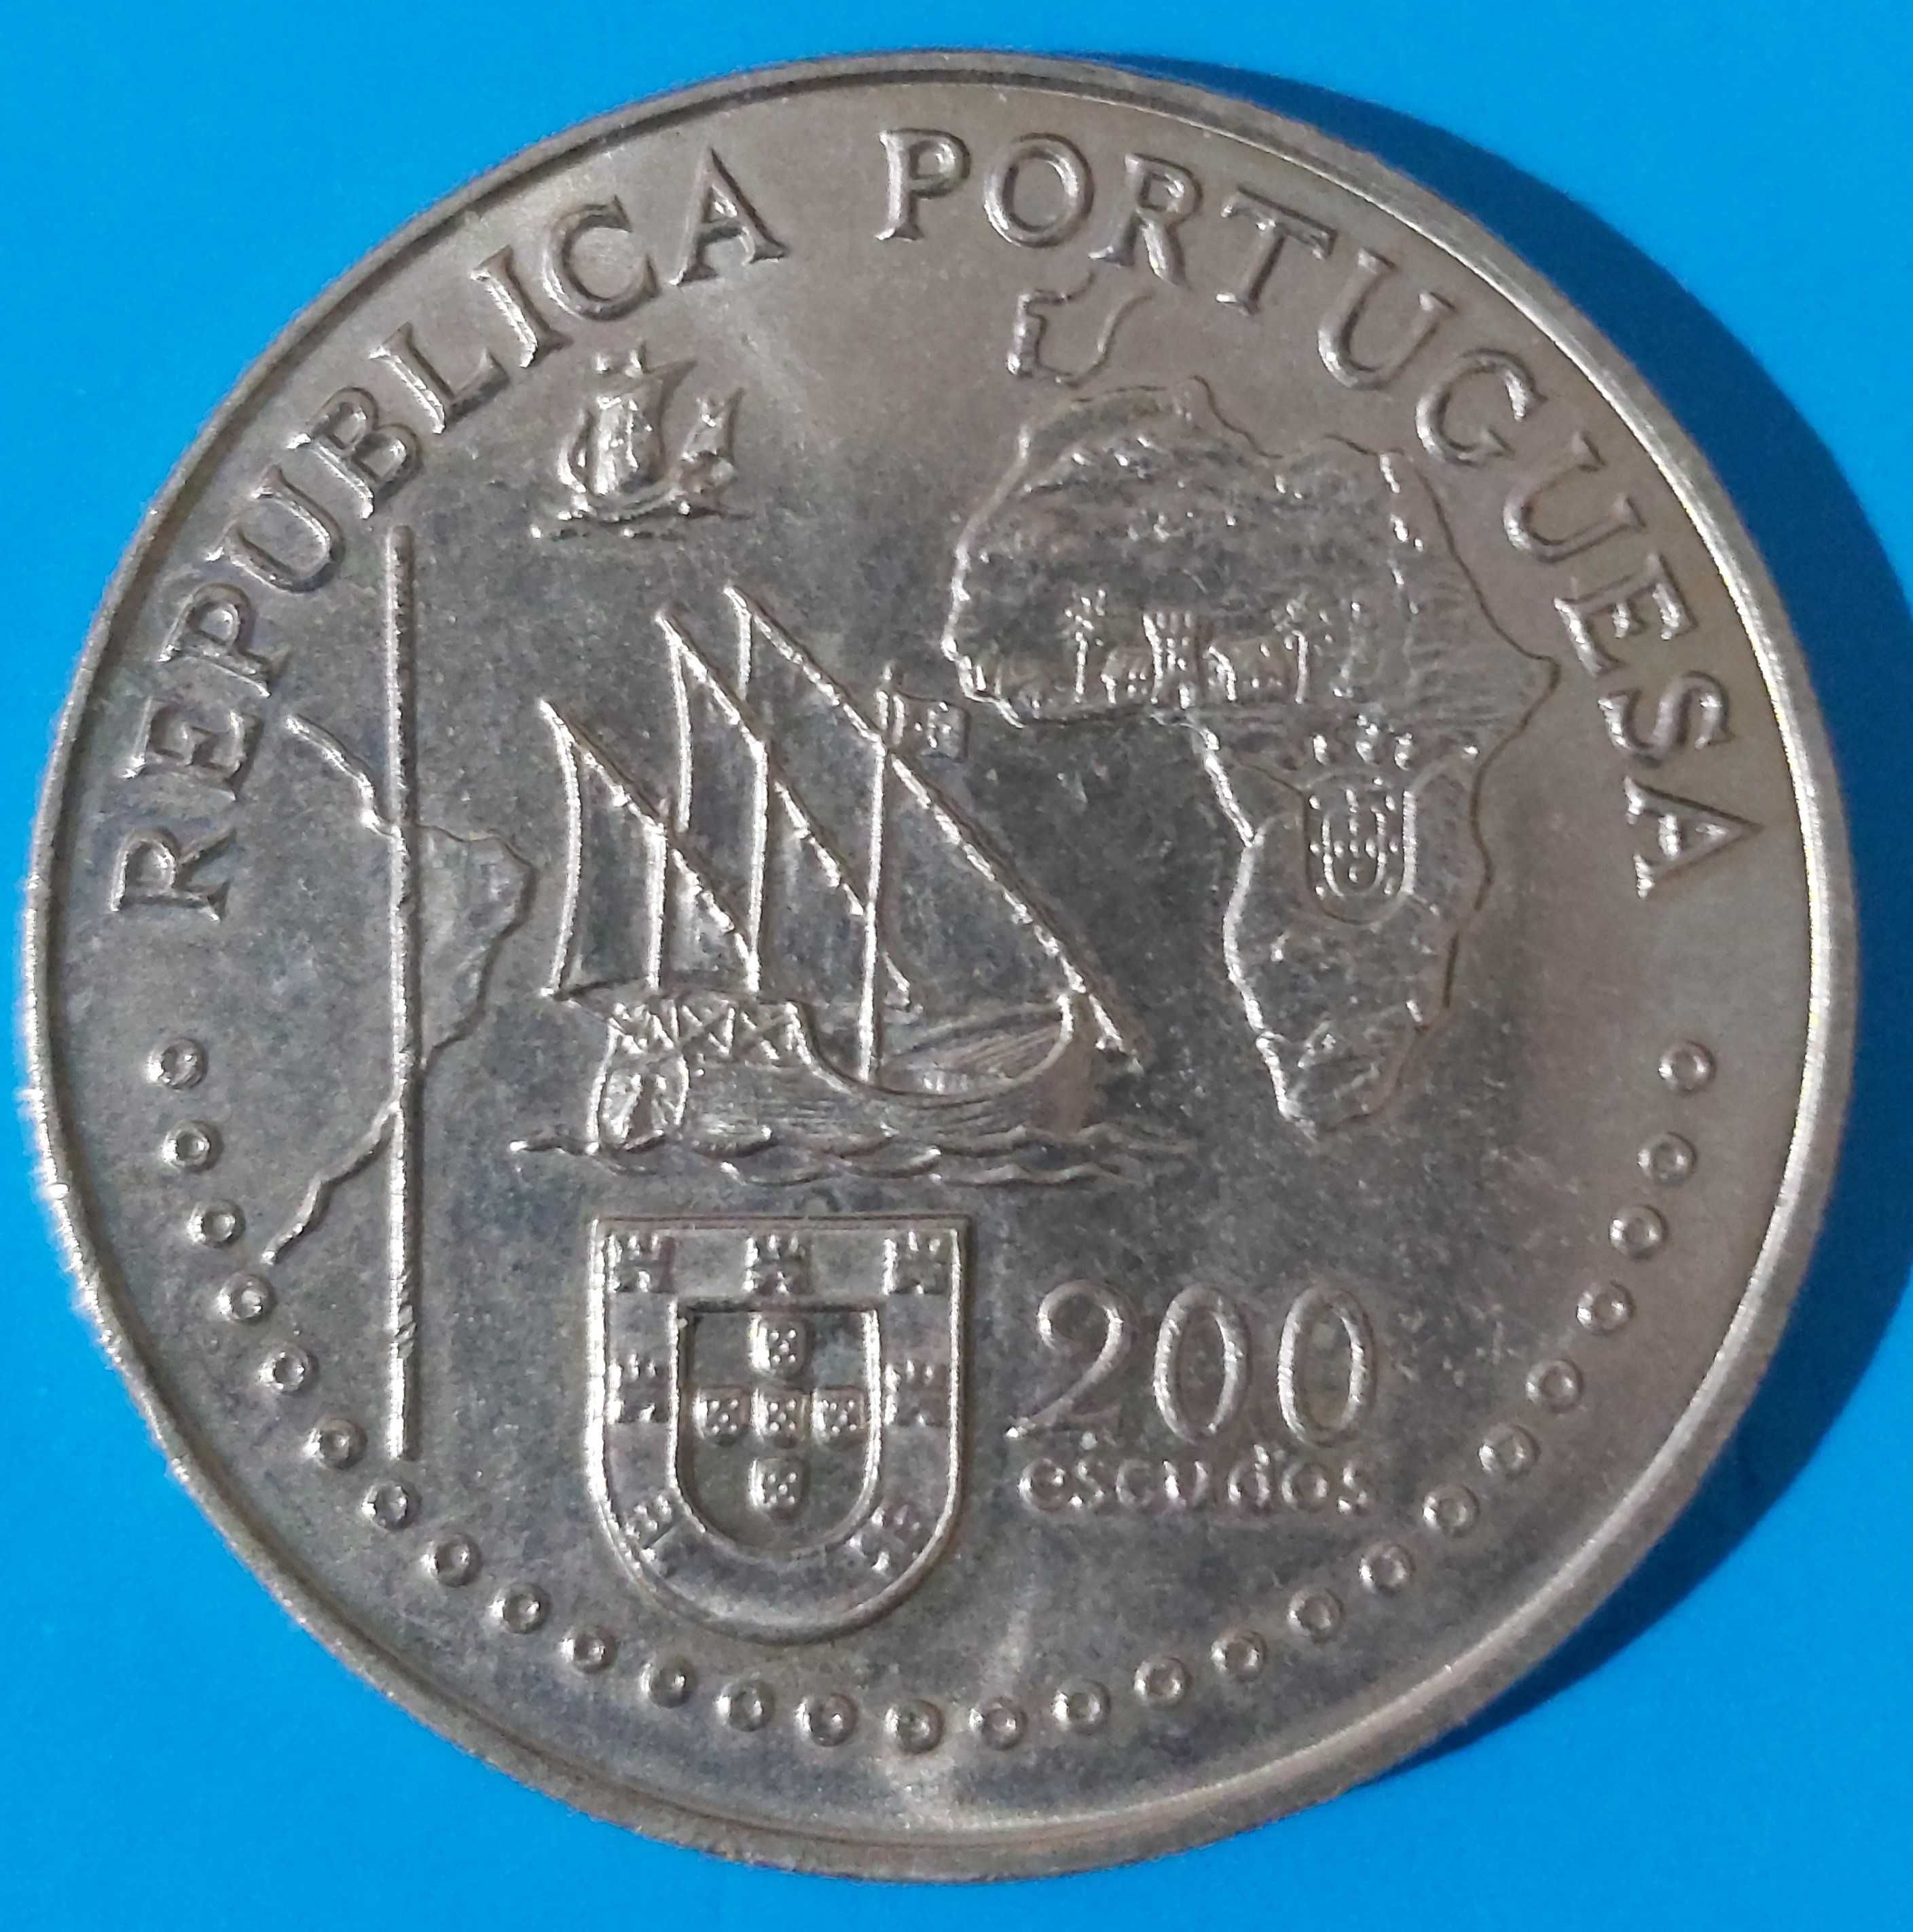 200$00 de 1994, comemorativa do Tratado de Tordesilhas